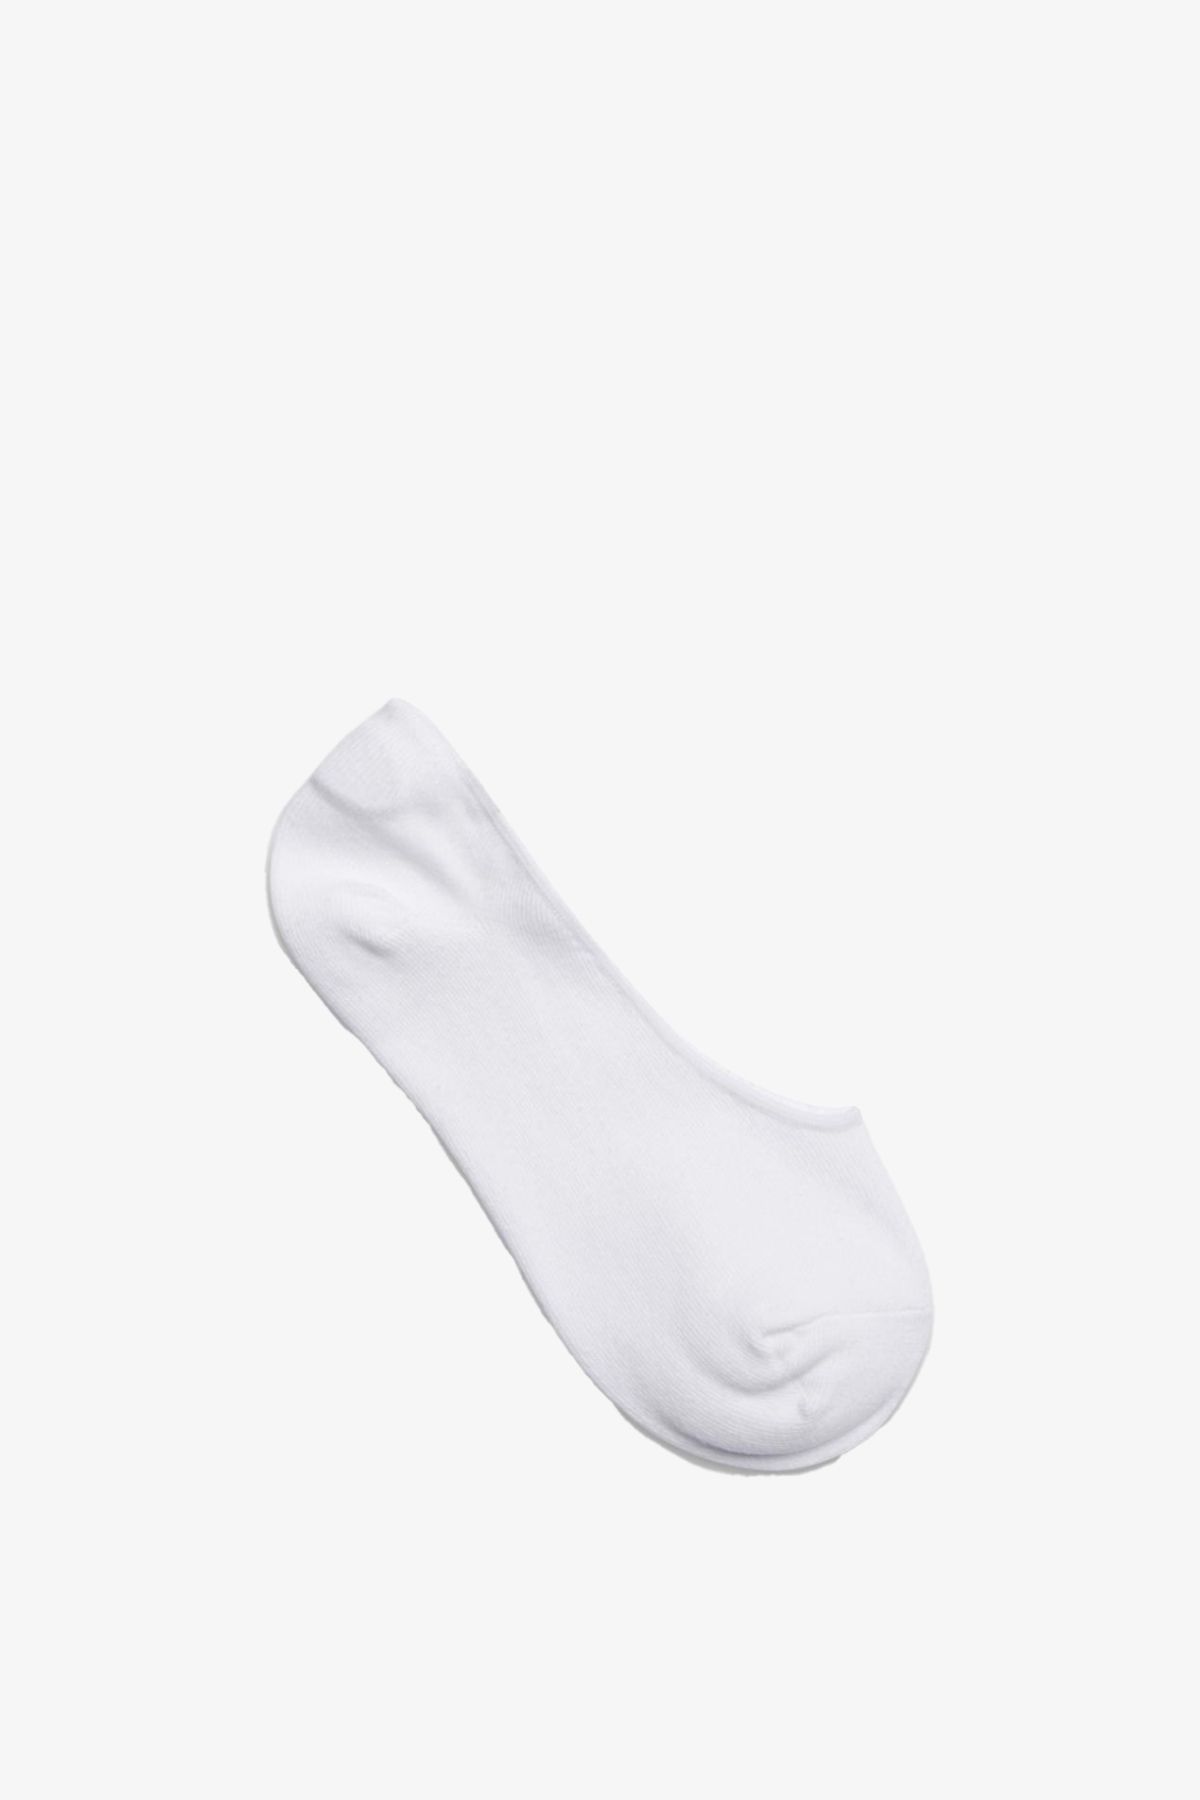 Jack & Jones Jacbasic Multi Short Sock Noos Unisex Beyaz Çorap 12124597-white